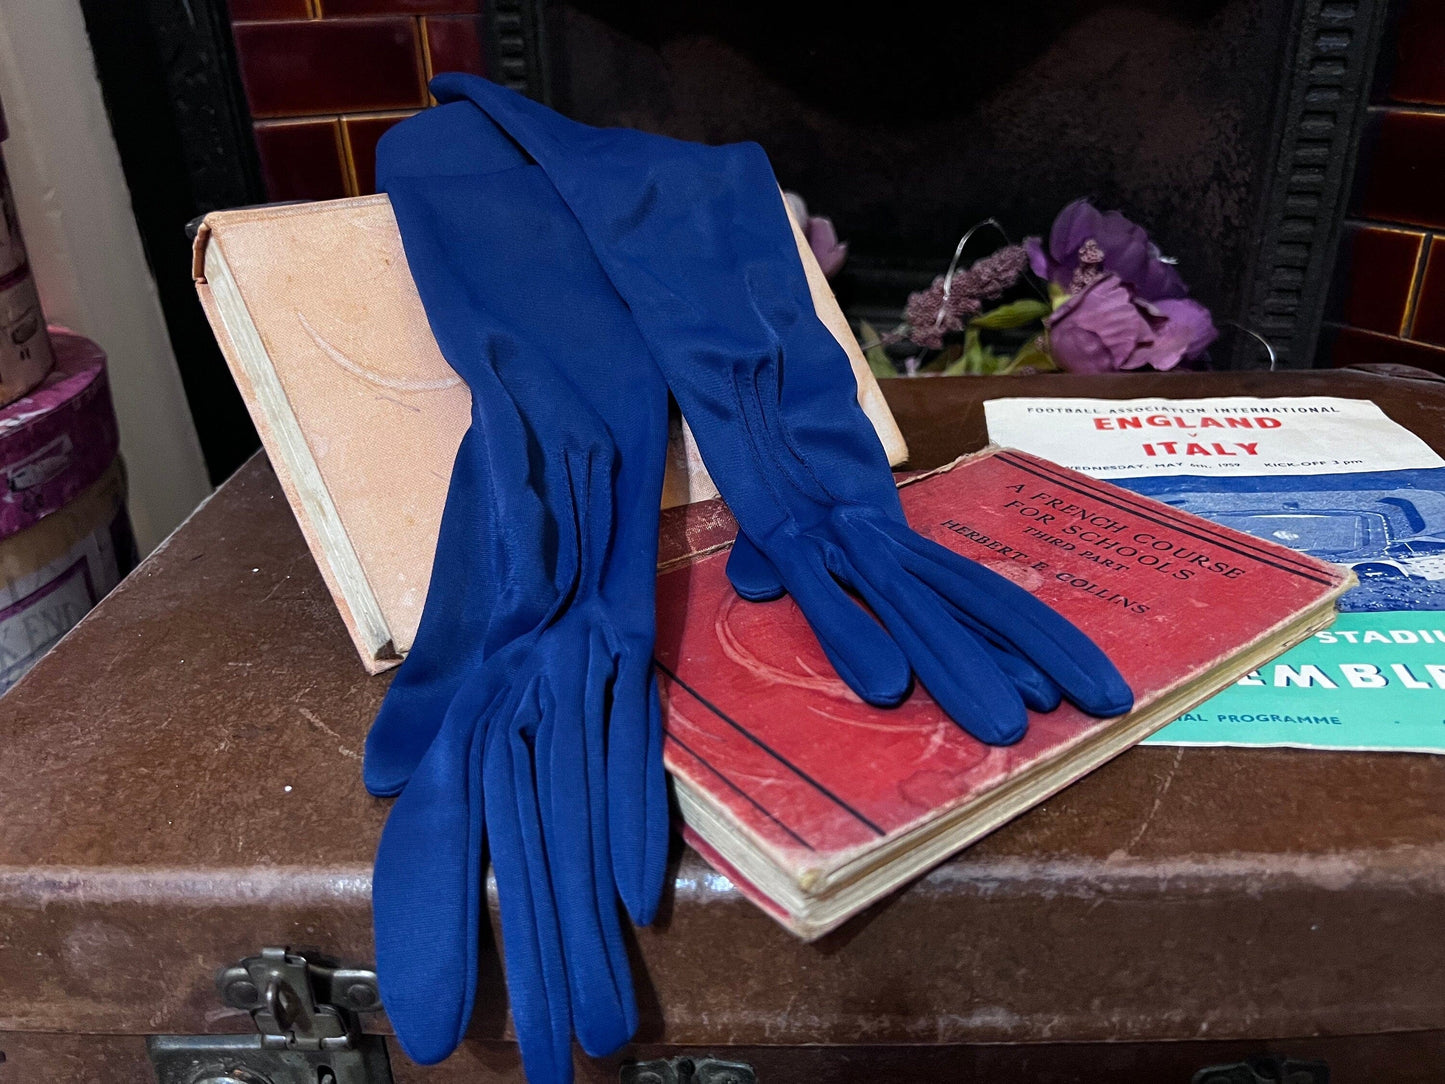 Vintage Ladies navy blue Stretch nylon Gloves - long Style navy blue Gloves - Small Gloves, Ladies long Gloves, navy Gloves, crochet gloves